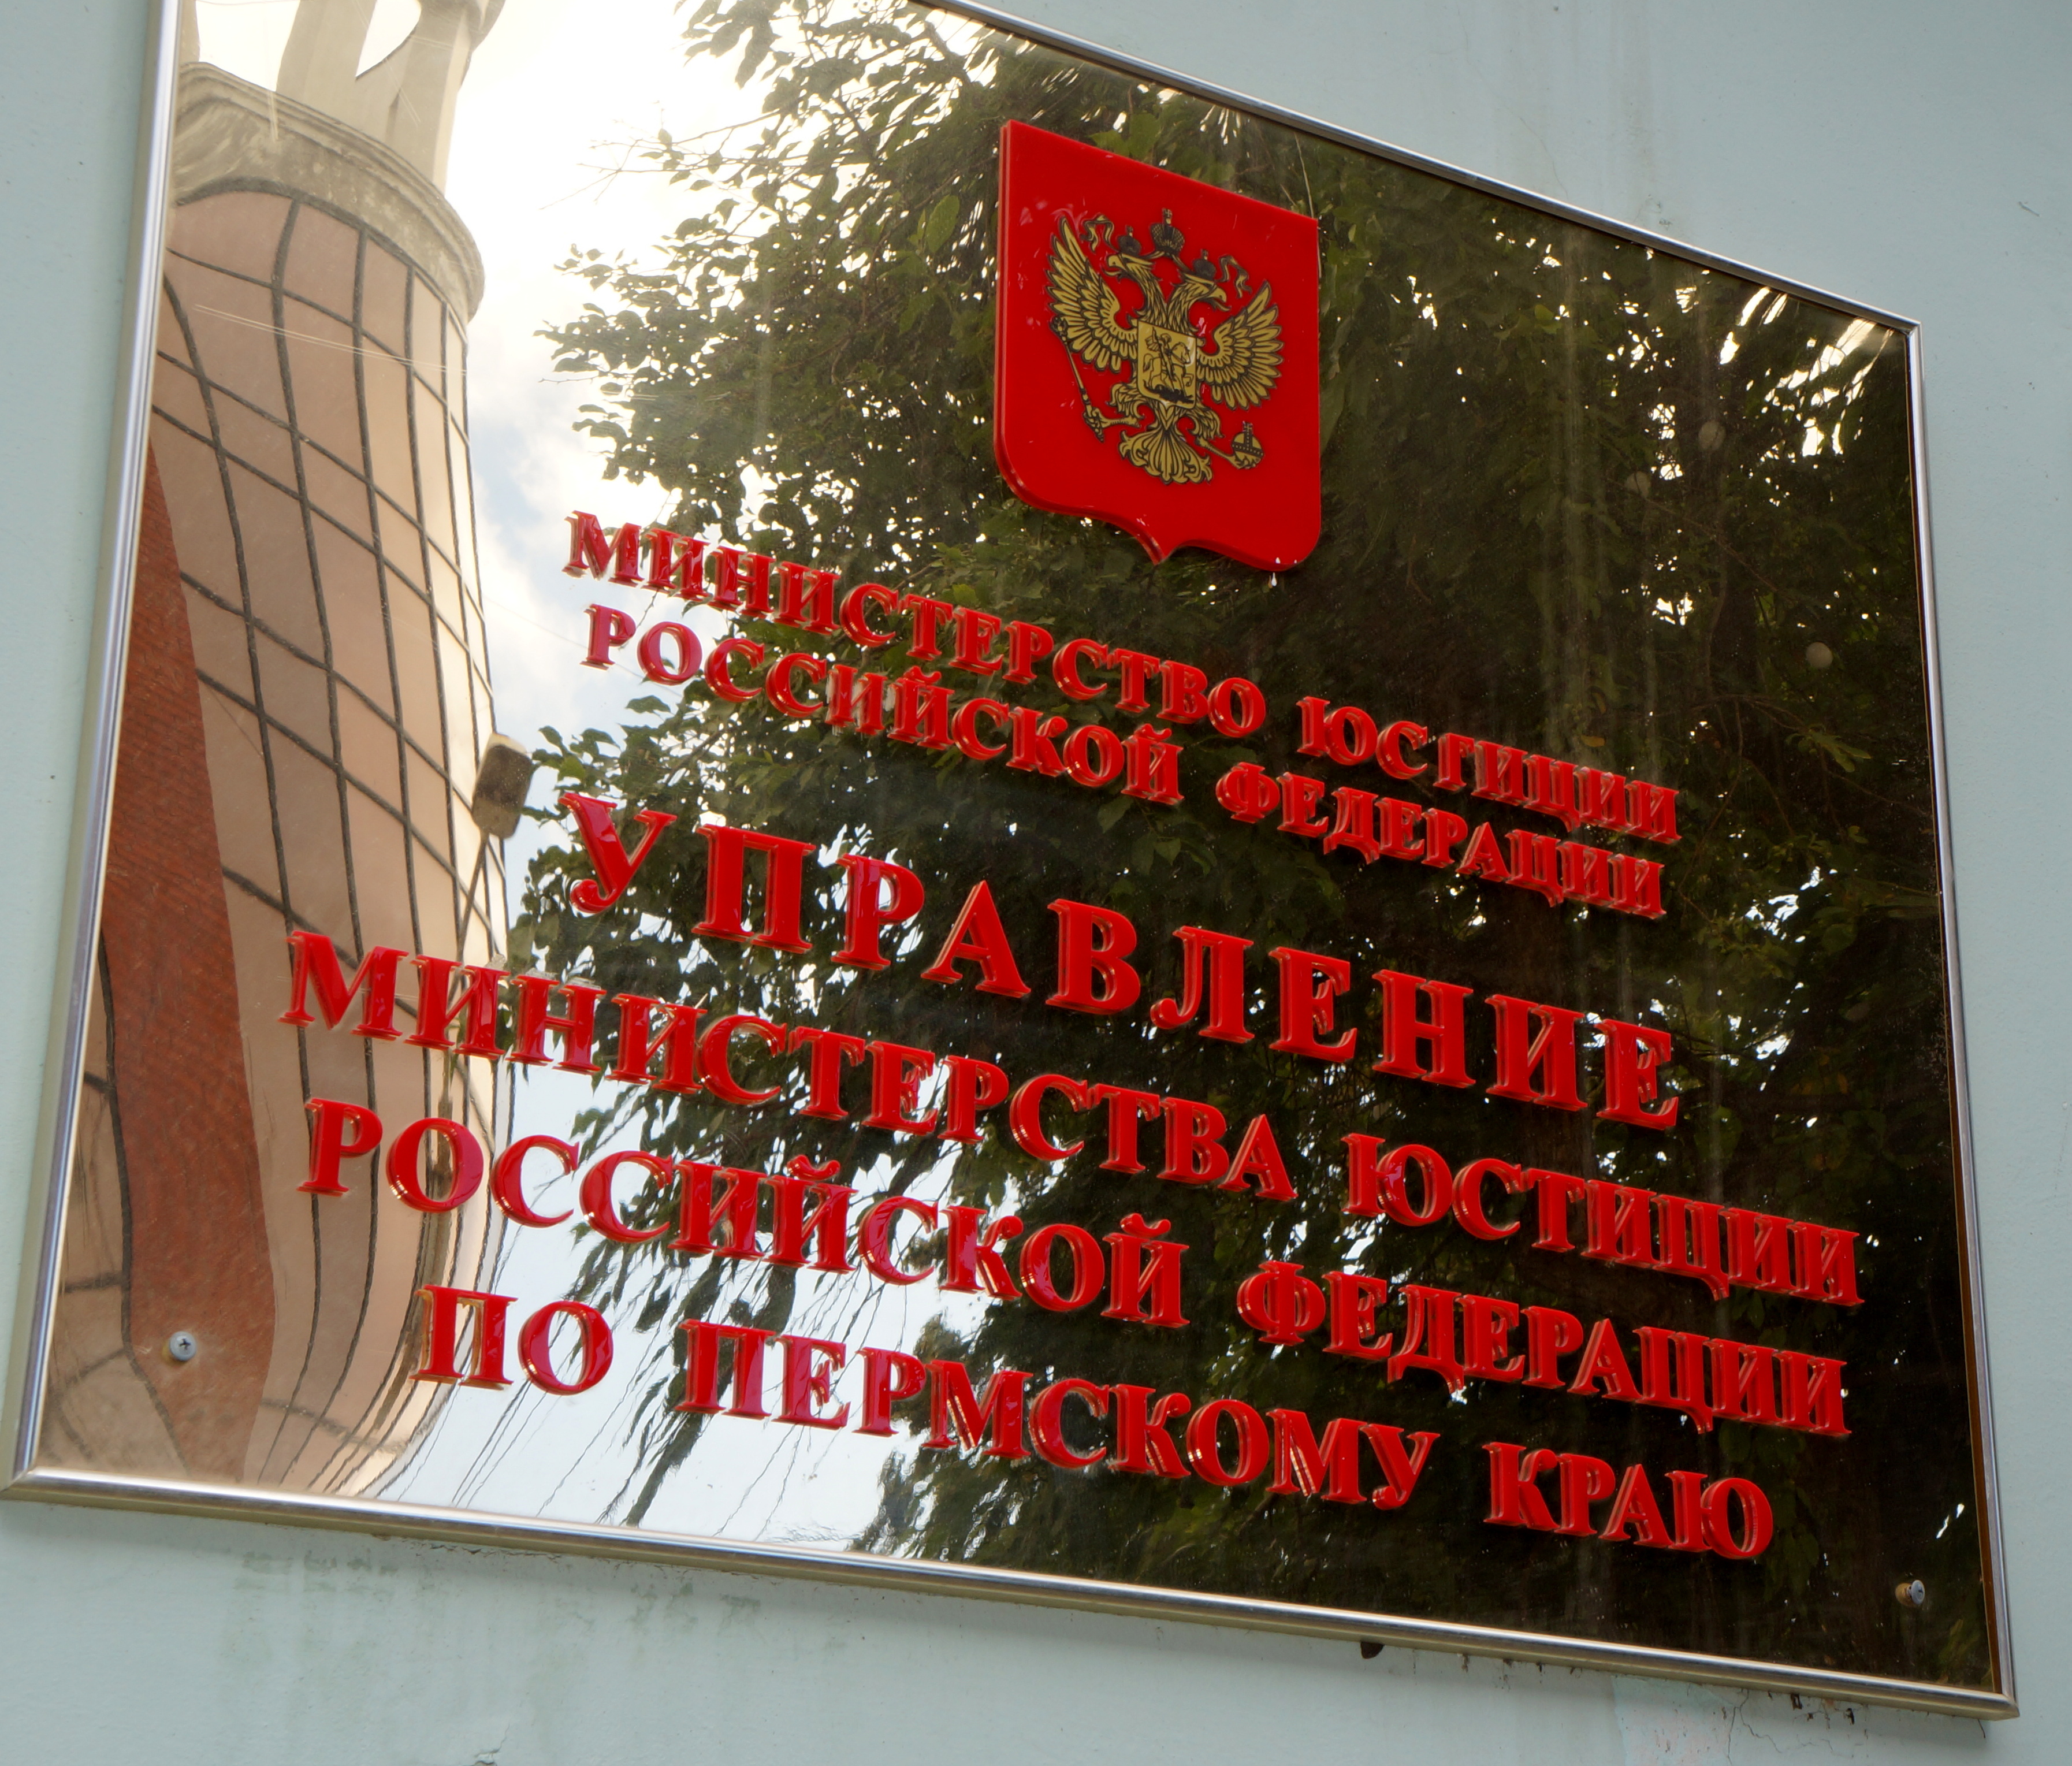 Министерство имущества и градостроительной деятельности пермского края